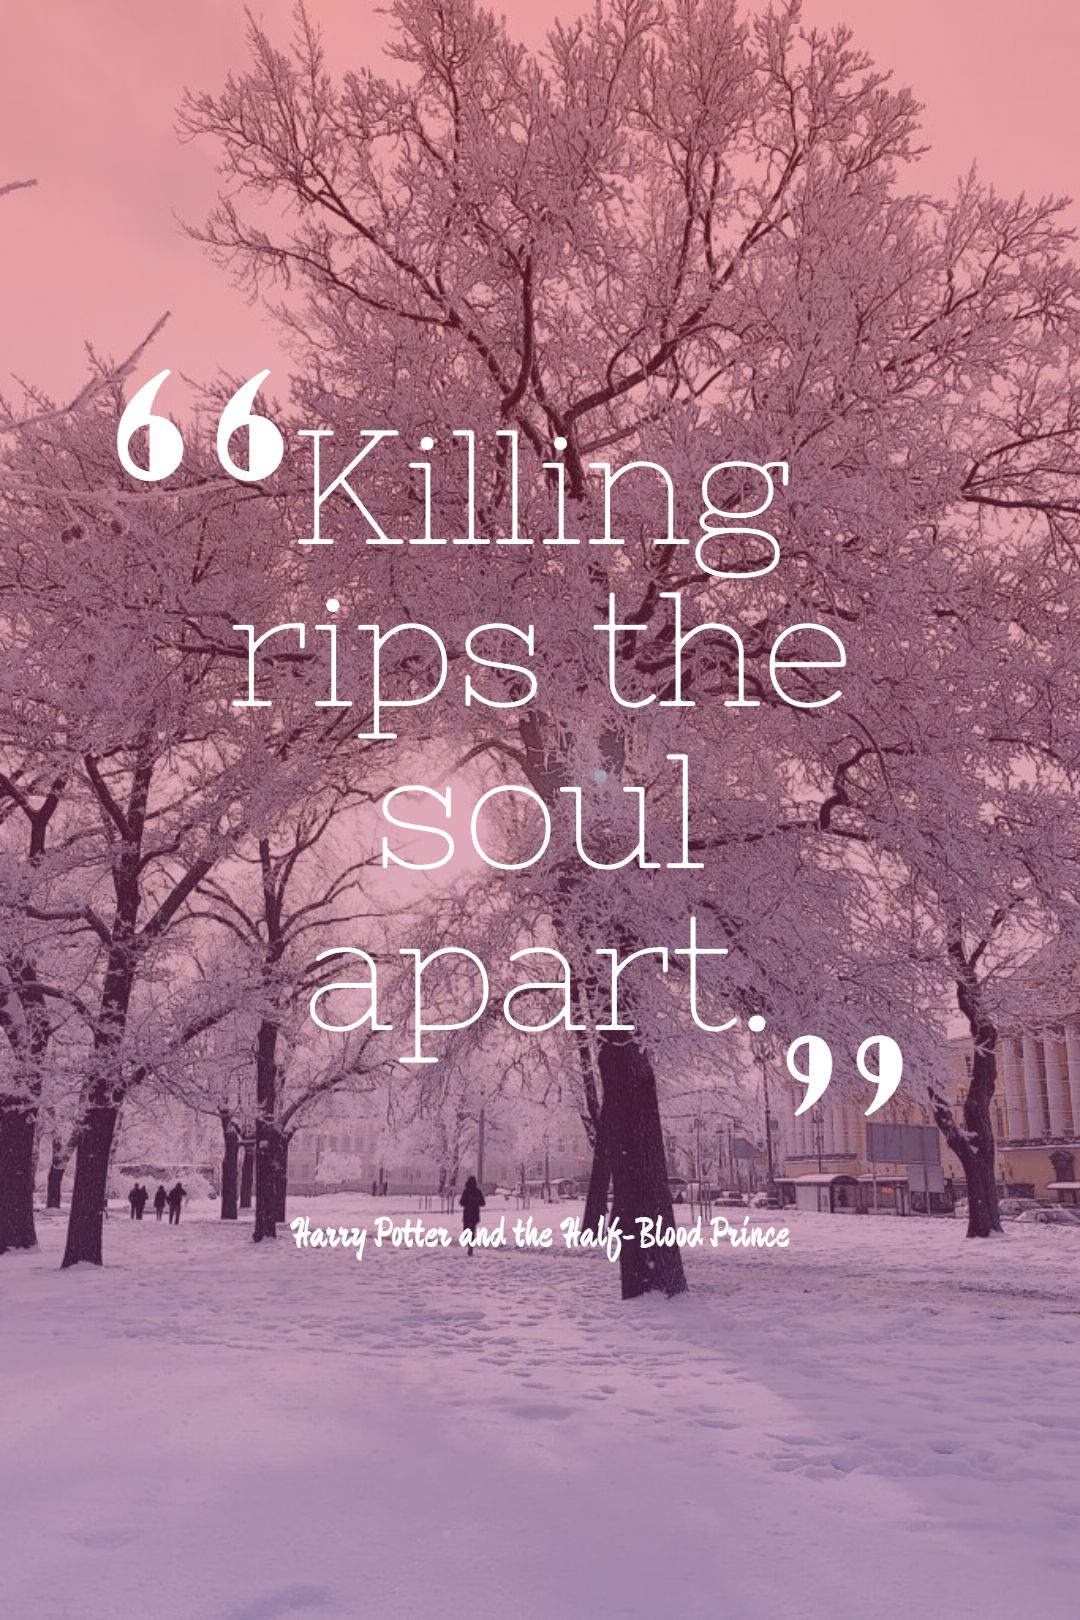 Killing rips the soul apart.